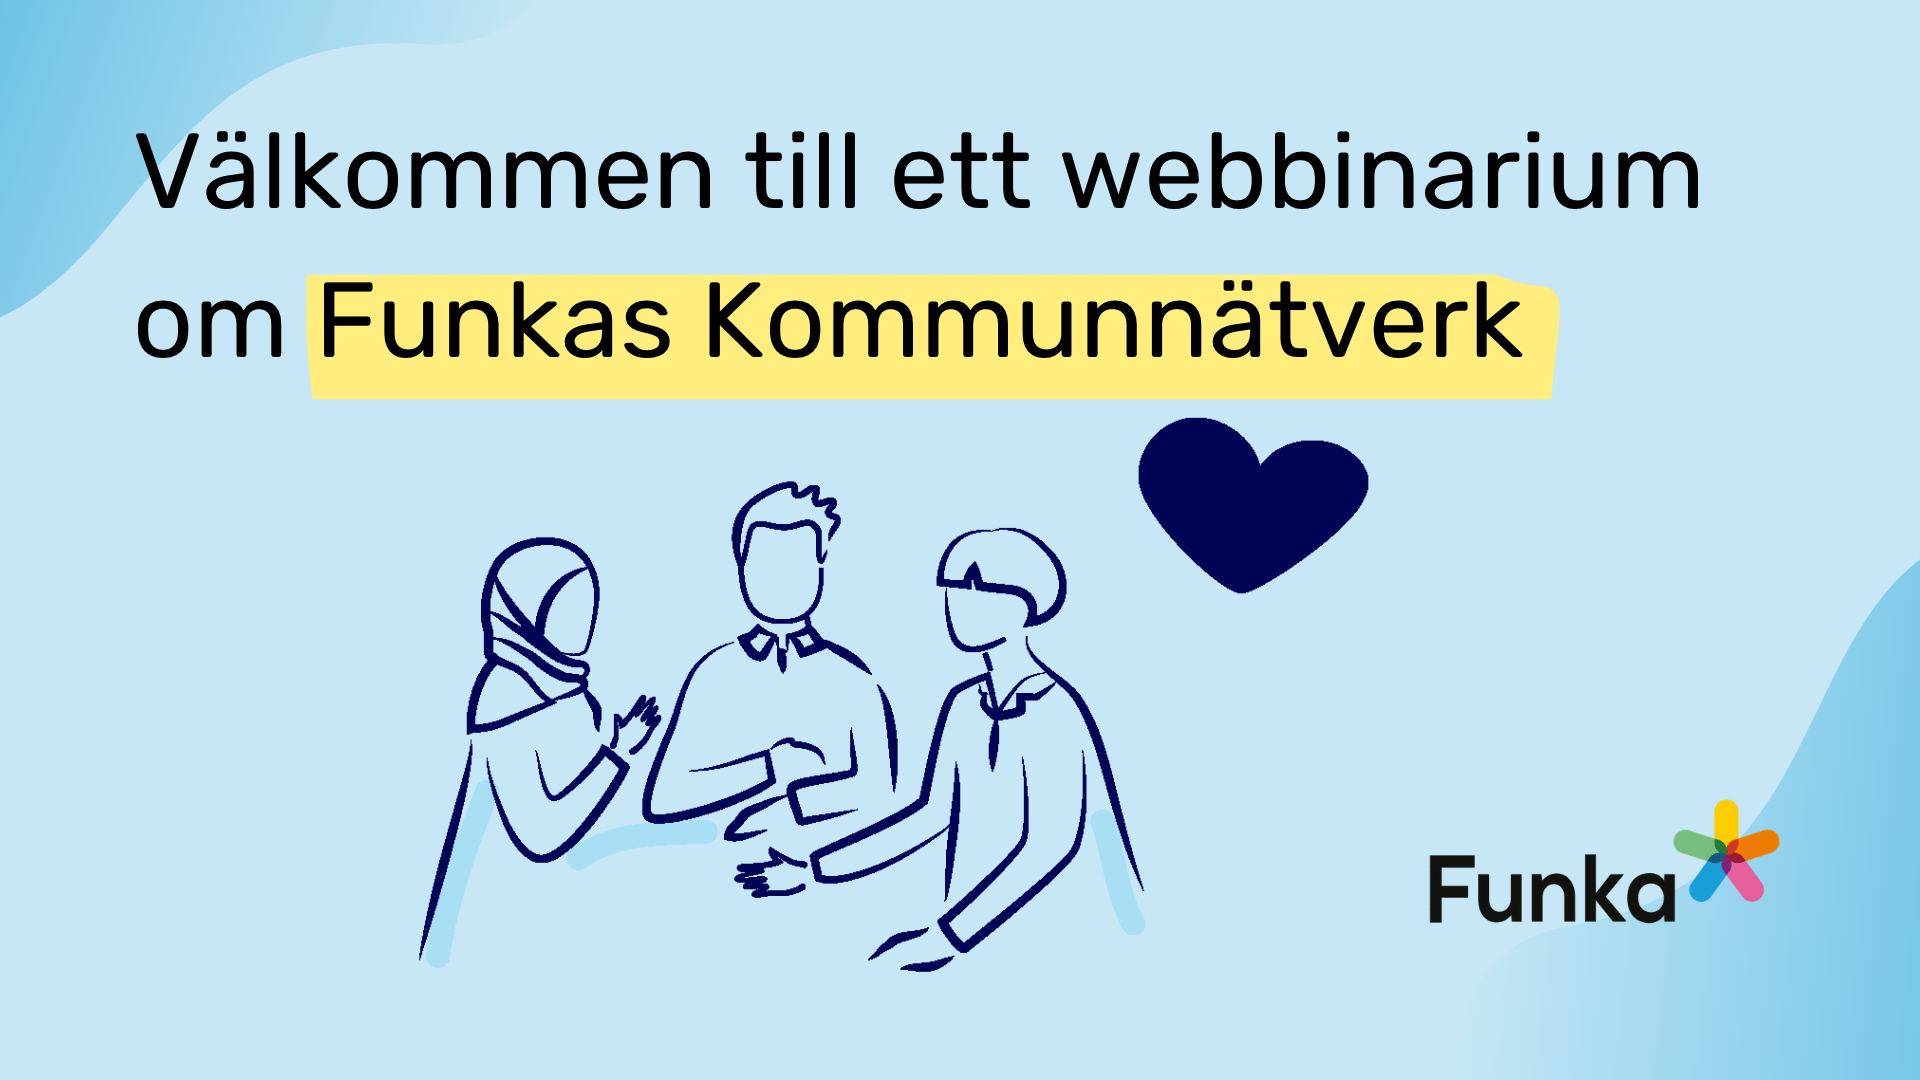 text på bild, Välkommen till ett webbinarium om Funkas Kommunnätverk. Handritade personer i dialog, hjärta illustration, Funka logo